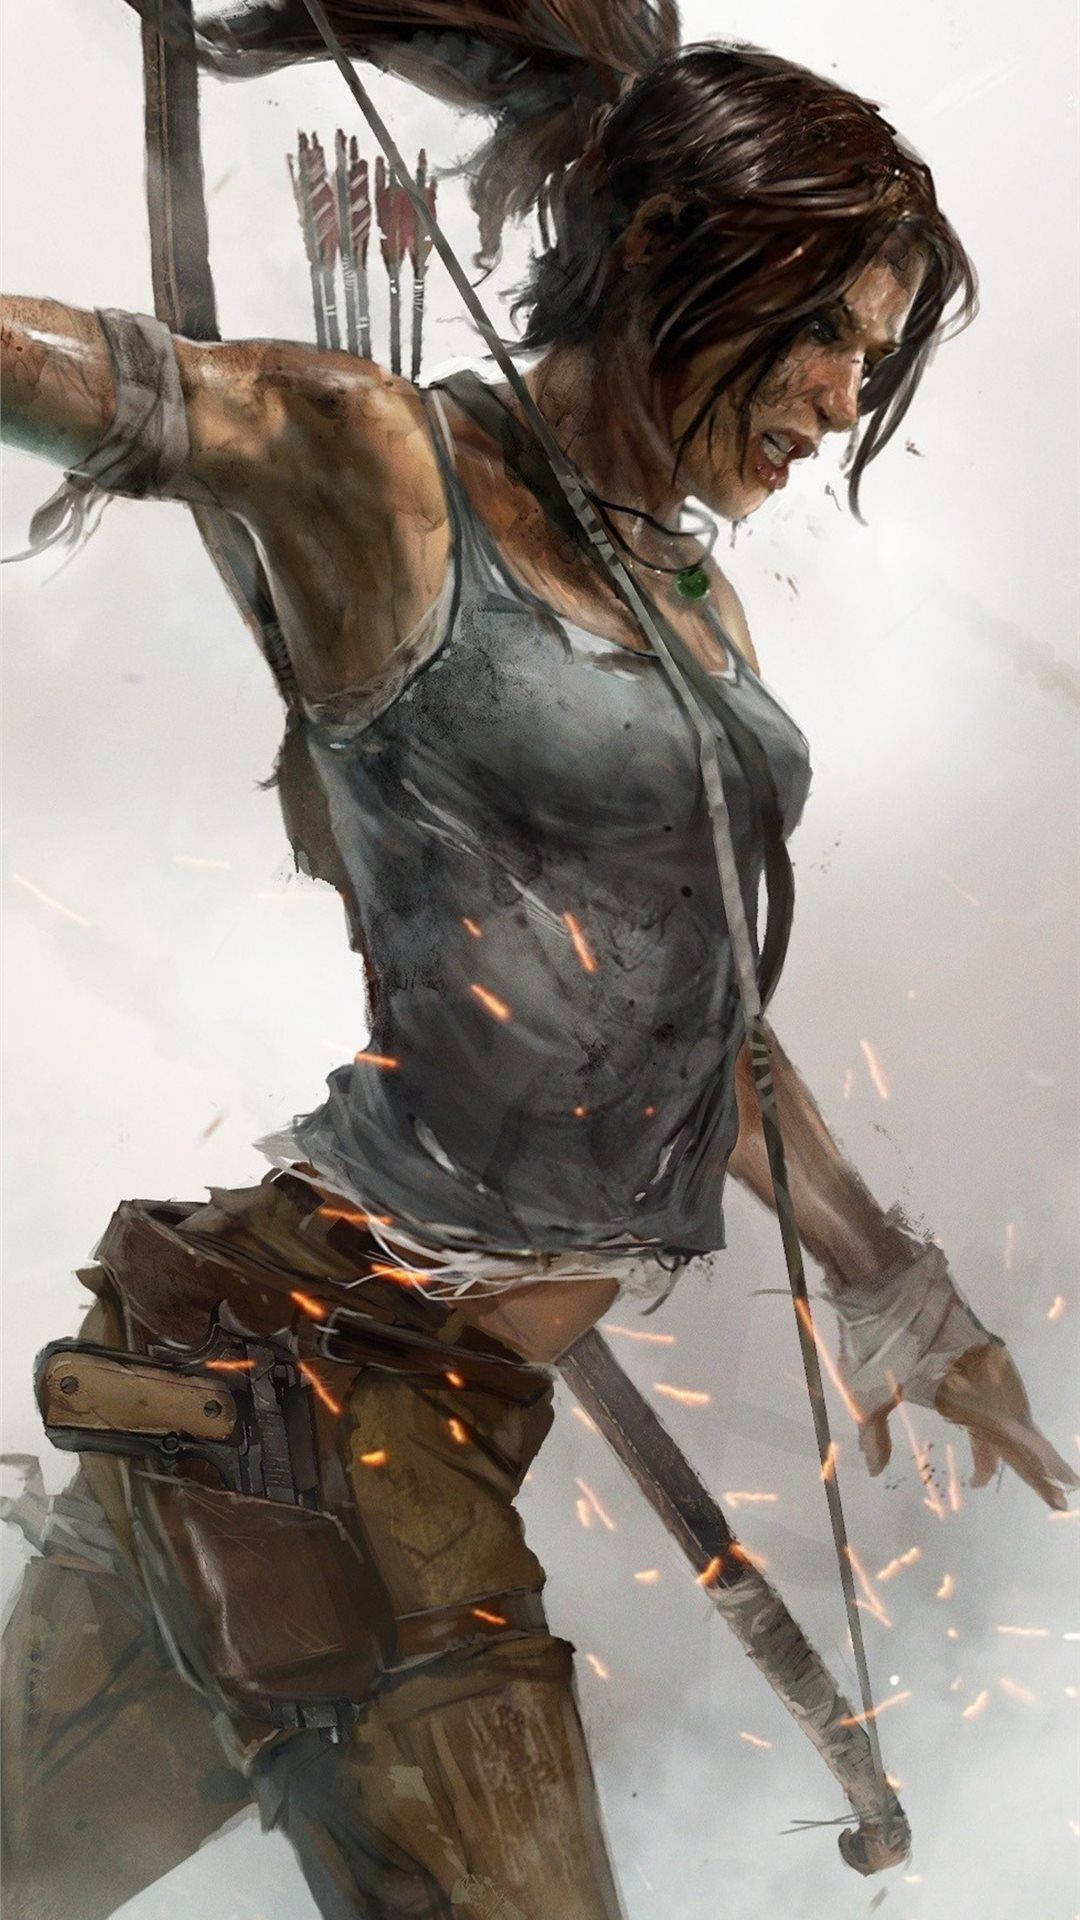 Gå på opdagelse i et nyt eventyr med Lara Croft på din Iphone. Wallpaper